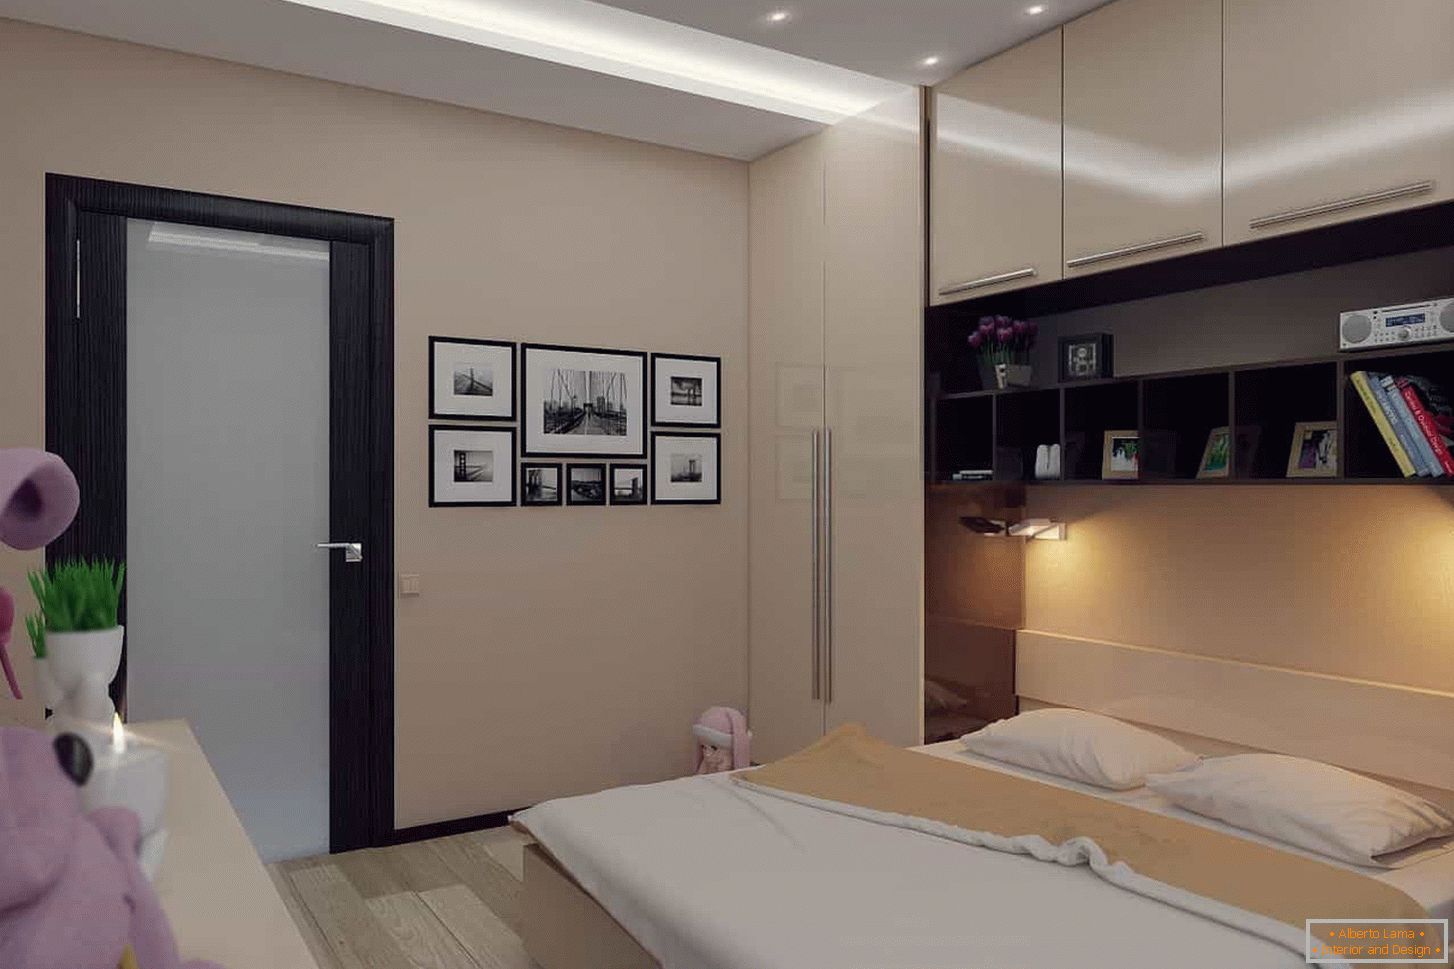 Diseño de dormitorio en estilo Art Nouveau 13 m2. M.